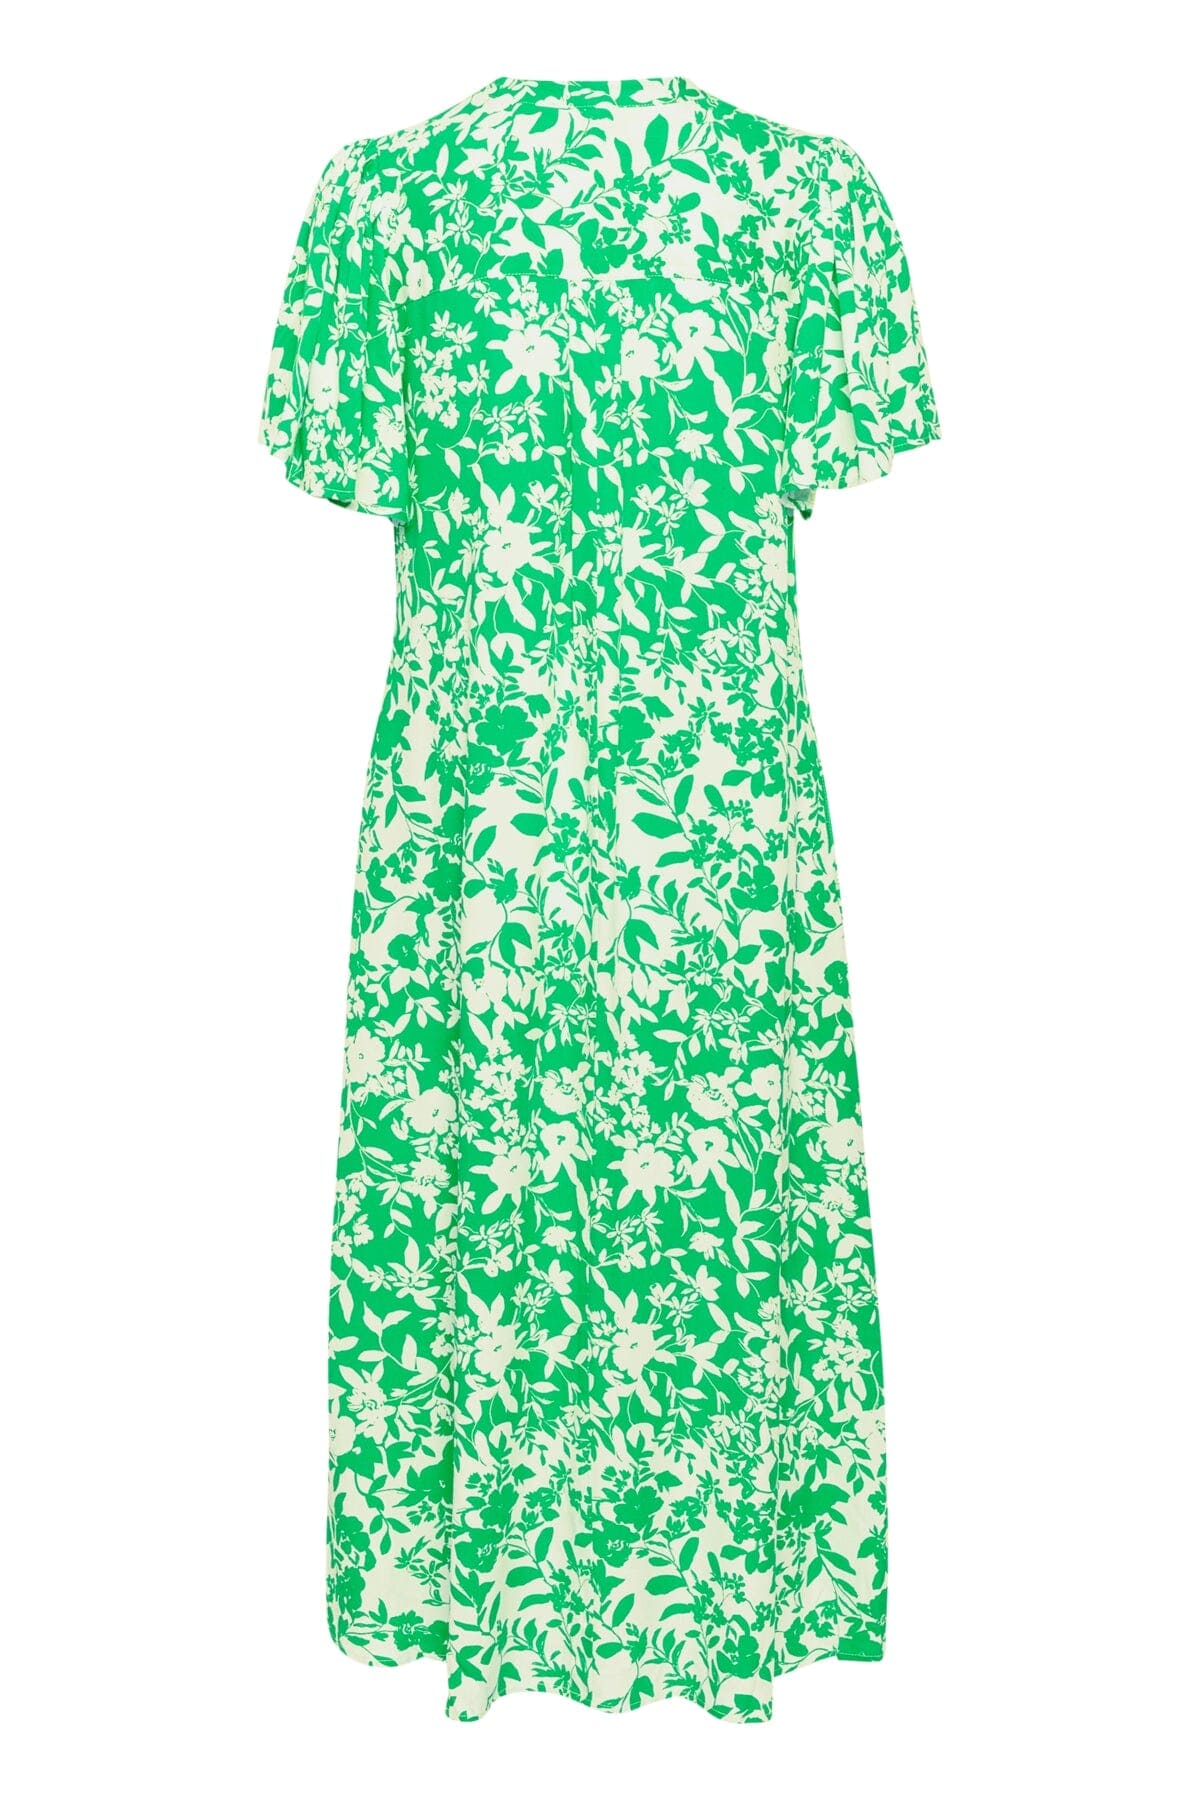 Jenny Long Dress in Green Whitecap Flower Long Dress Culture 